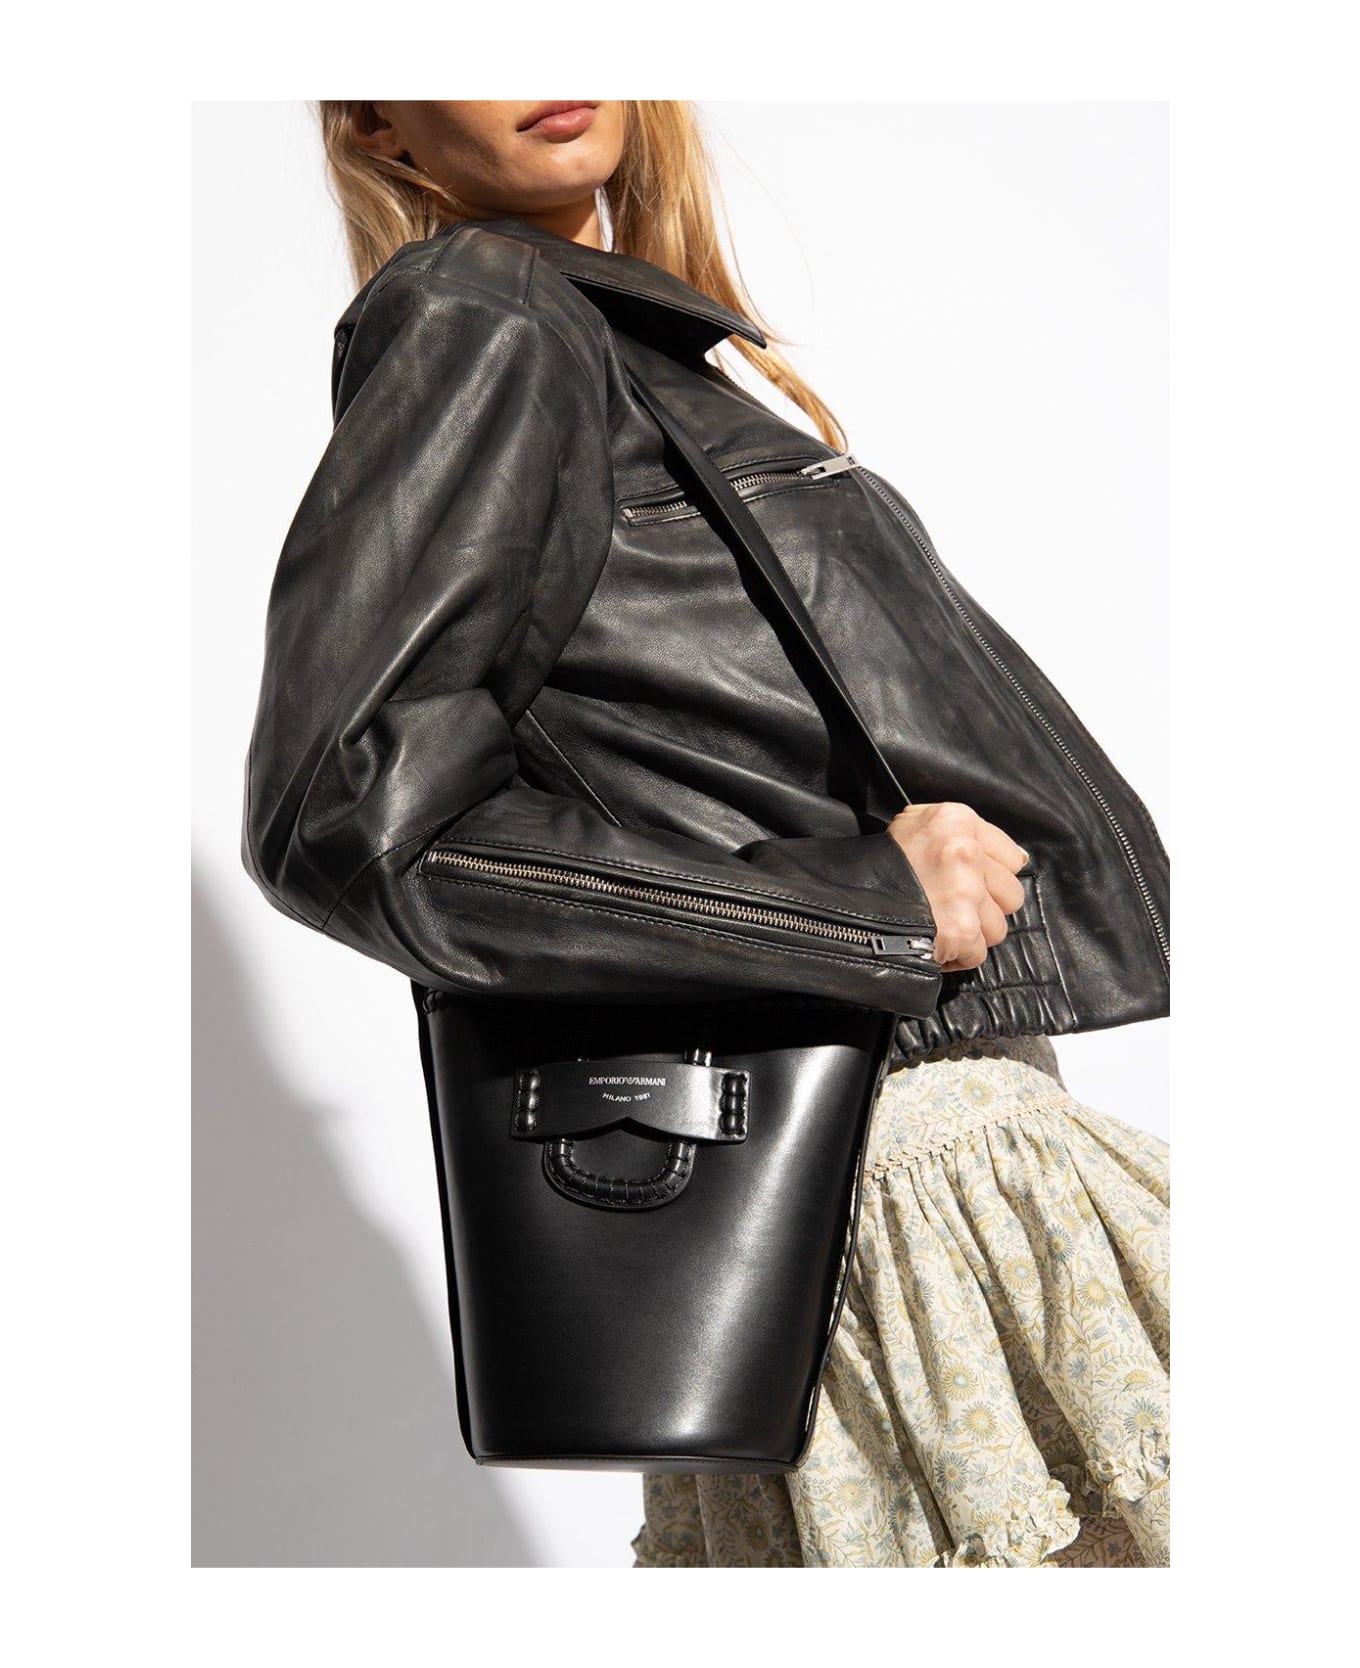 Emporio Armani Shoulder Bag With Logo - Black